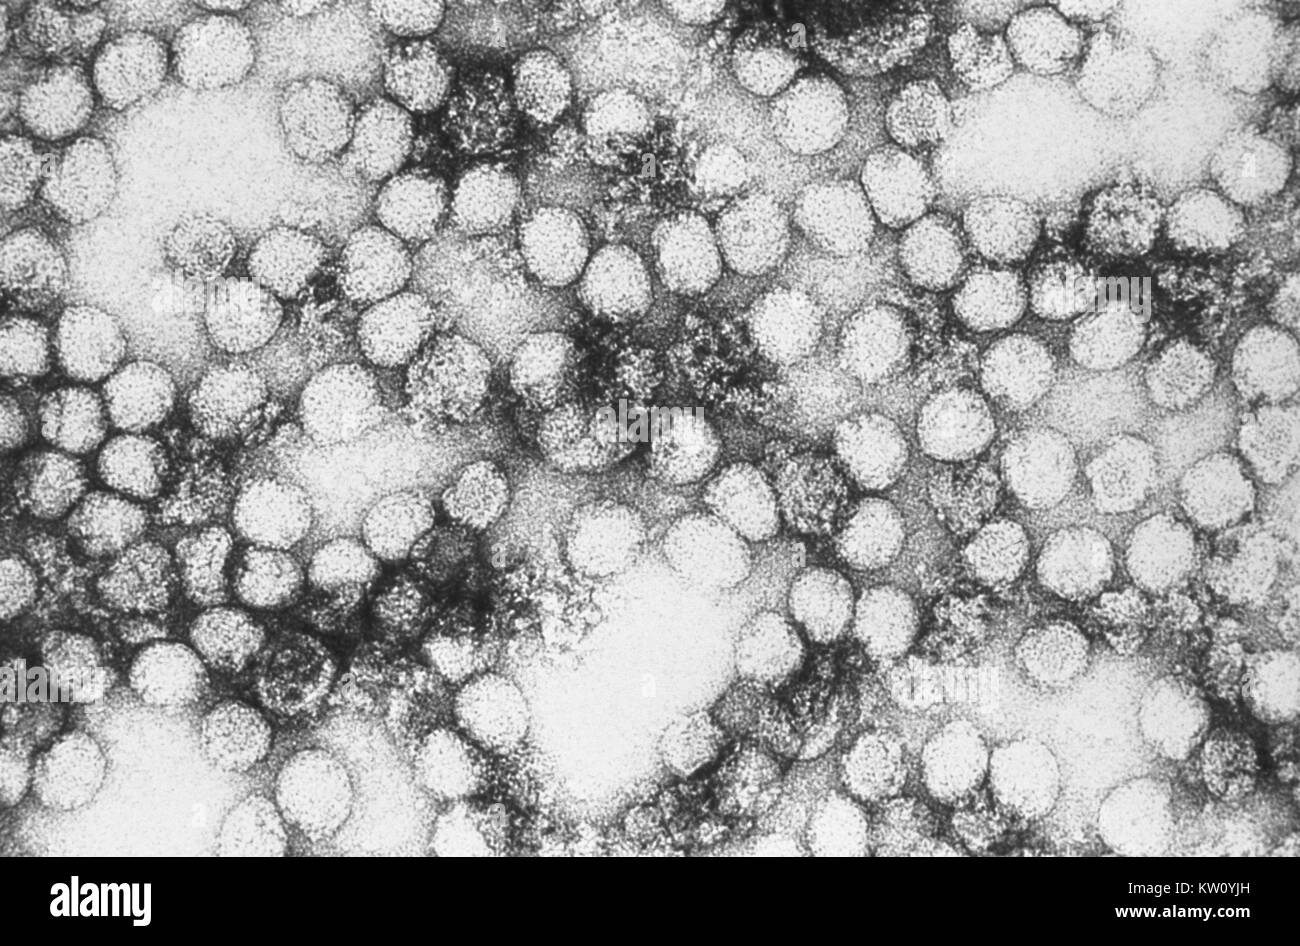 Eine Transmission Electron Micrograph (TEM) von Gelbfieber virus Virionen. Virionen sind kugelförmige, einheitlich in Form und sind mit einem Durchmesser von 40-60 Nm. Der Name "Gelbfieber" ist aufgrund der daraus resultierenden Gelbsucht, die bei einigen Patienten. Der Vektor ist die Aedes aegypti, oder Haemagogus spp. Moskito. Mit freundlicher CDC/Erskine Palmer, 1981. Stockfoto